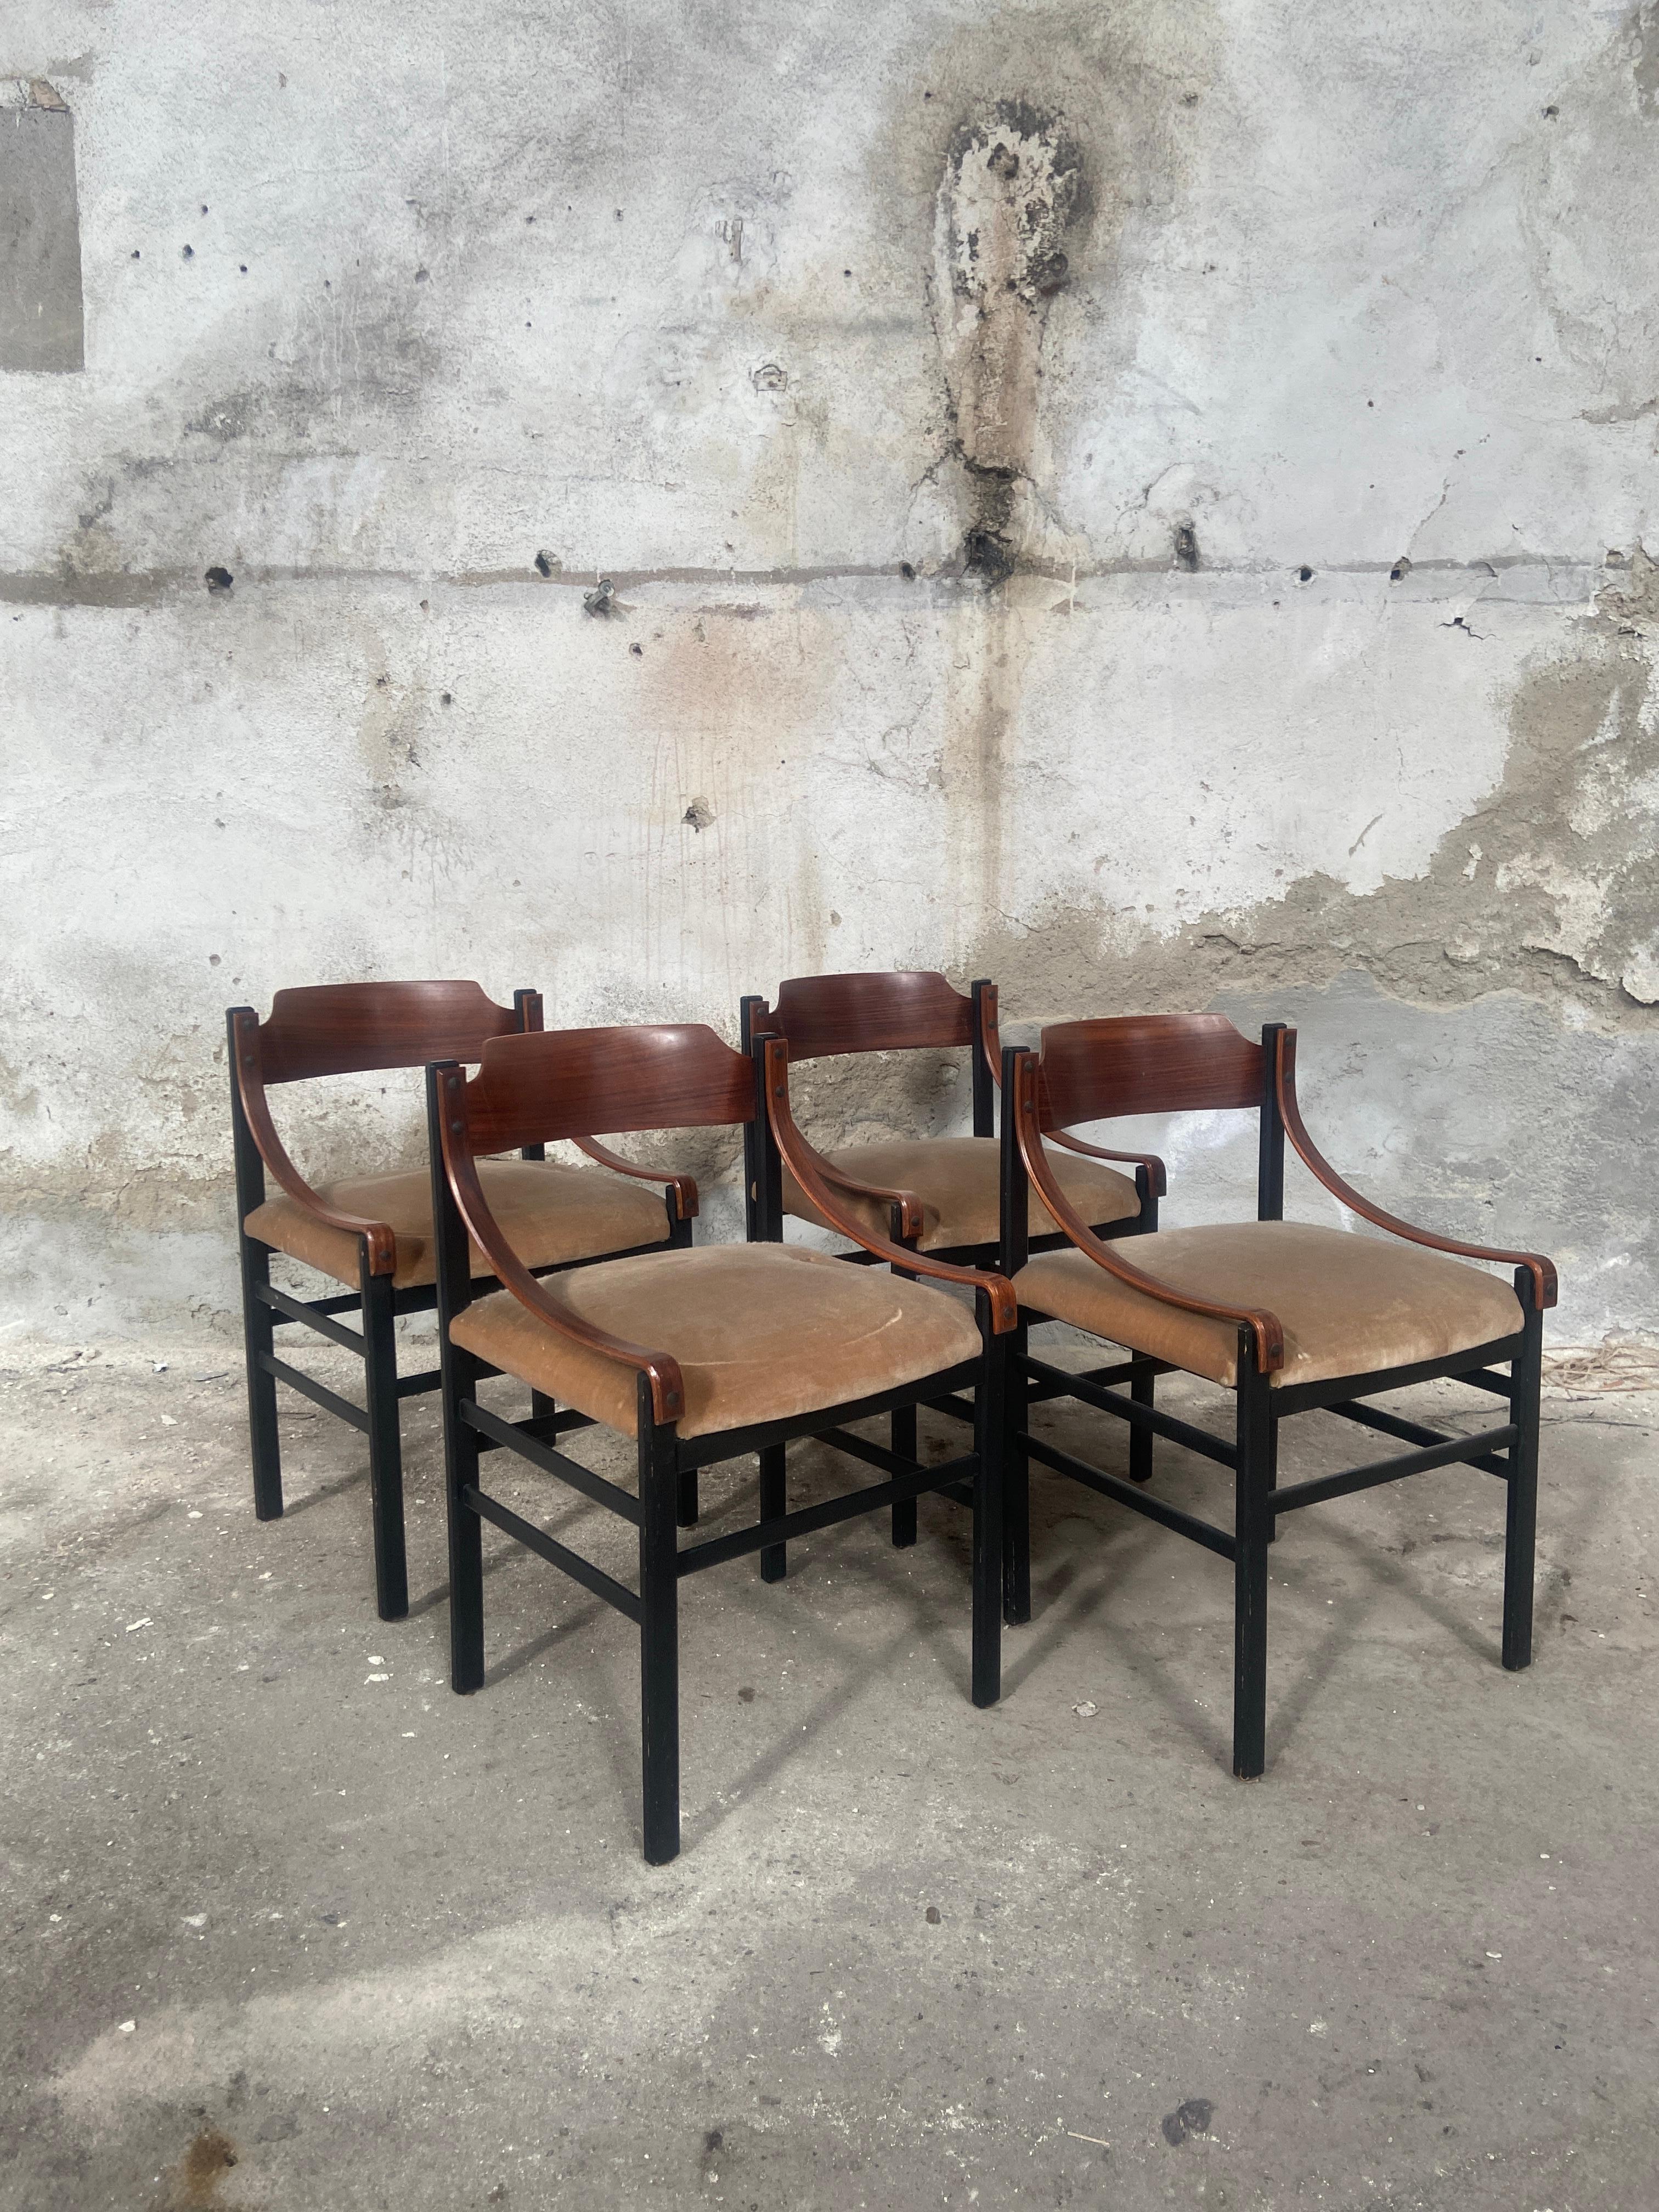 Ensemble de quatre chaises de salle à manger danoises de style moderne du milieu du siècle, avec revêtement en velours d'origine et structure en bois.
La structure des chaises est en très bon état. Les sièges sont ceux d'origine de l'époque et